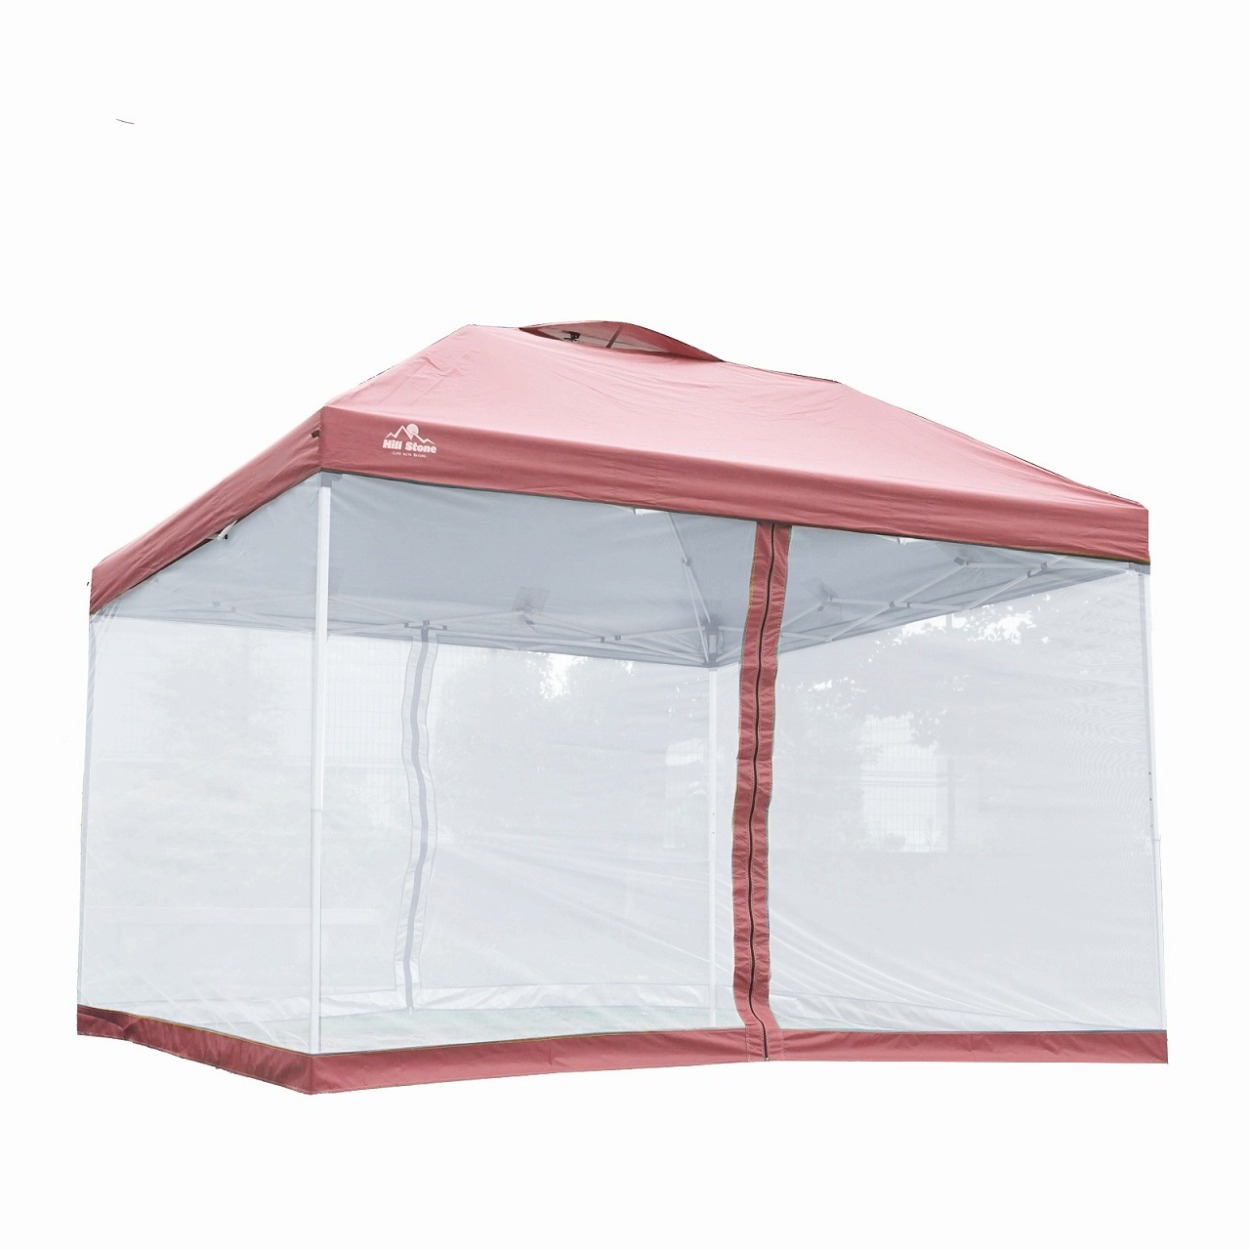 テント タープ 3m スクリーンタープ メッシュシート セット UVカット ワンタッチ タープテント アウトドア キャンプ レジャー 大型 蚊帳  日よけ 防水 送料無料